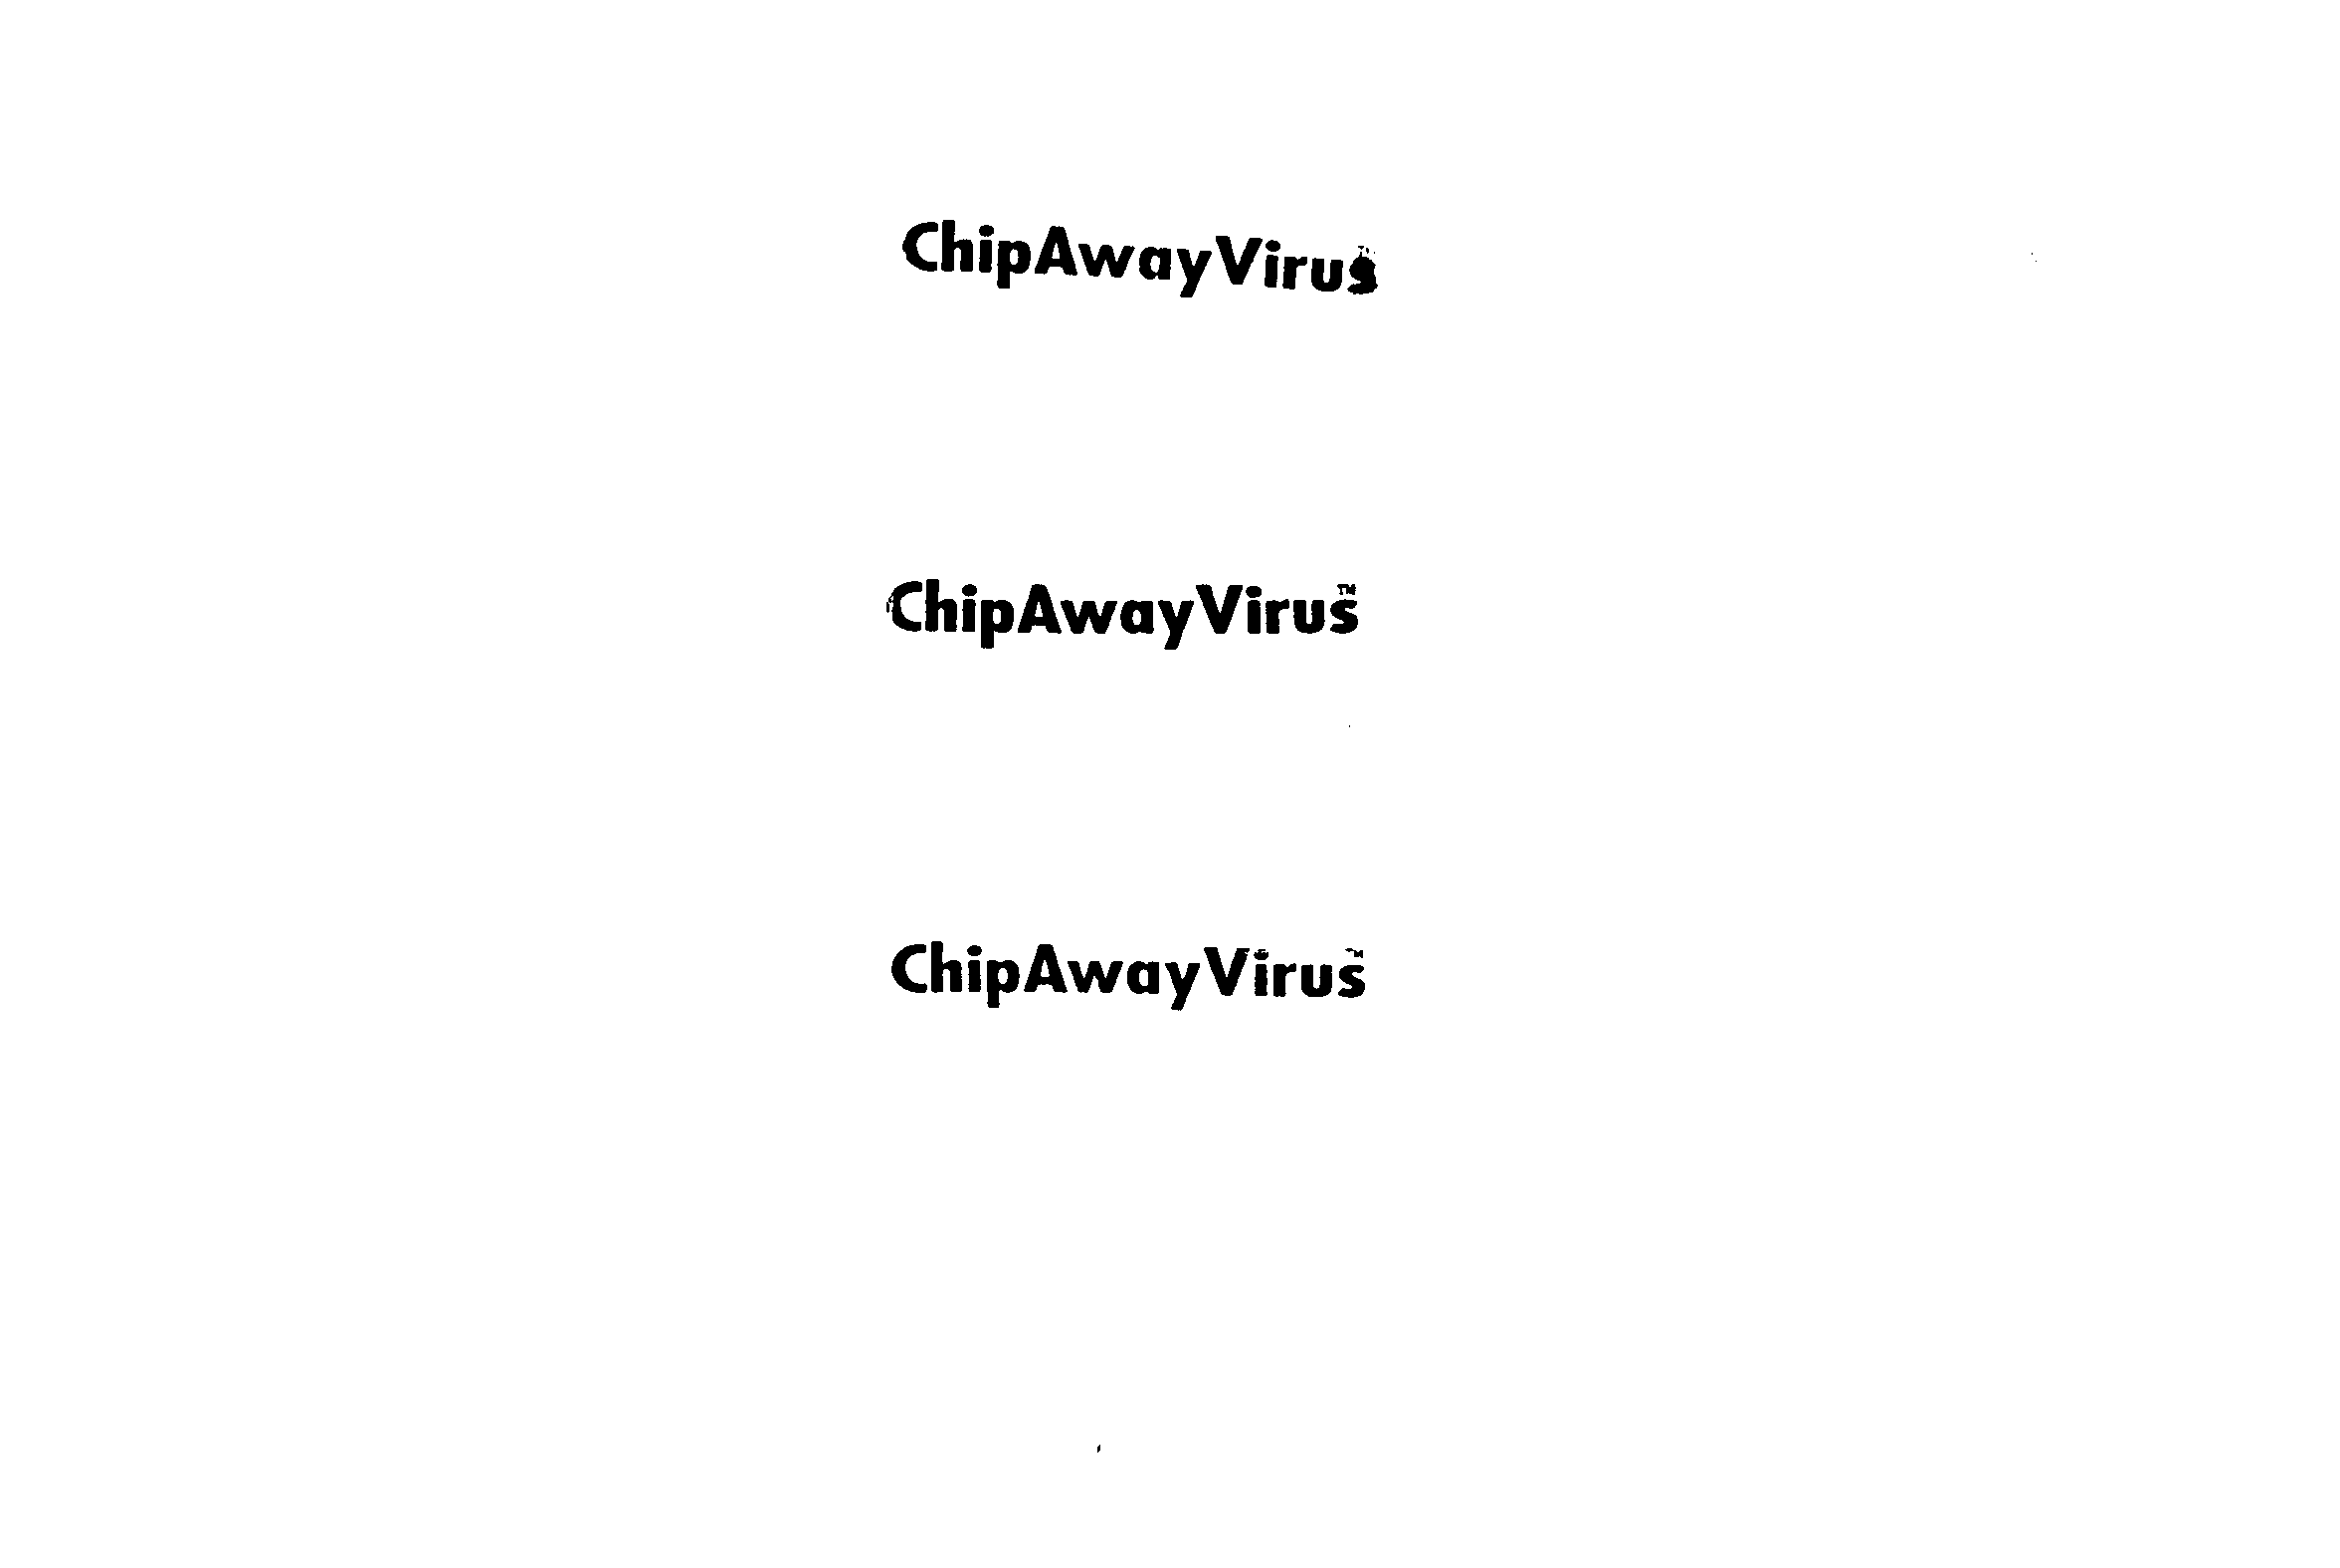 CHIPAWAYVIRUS